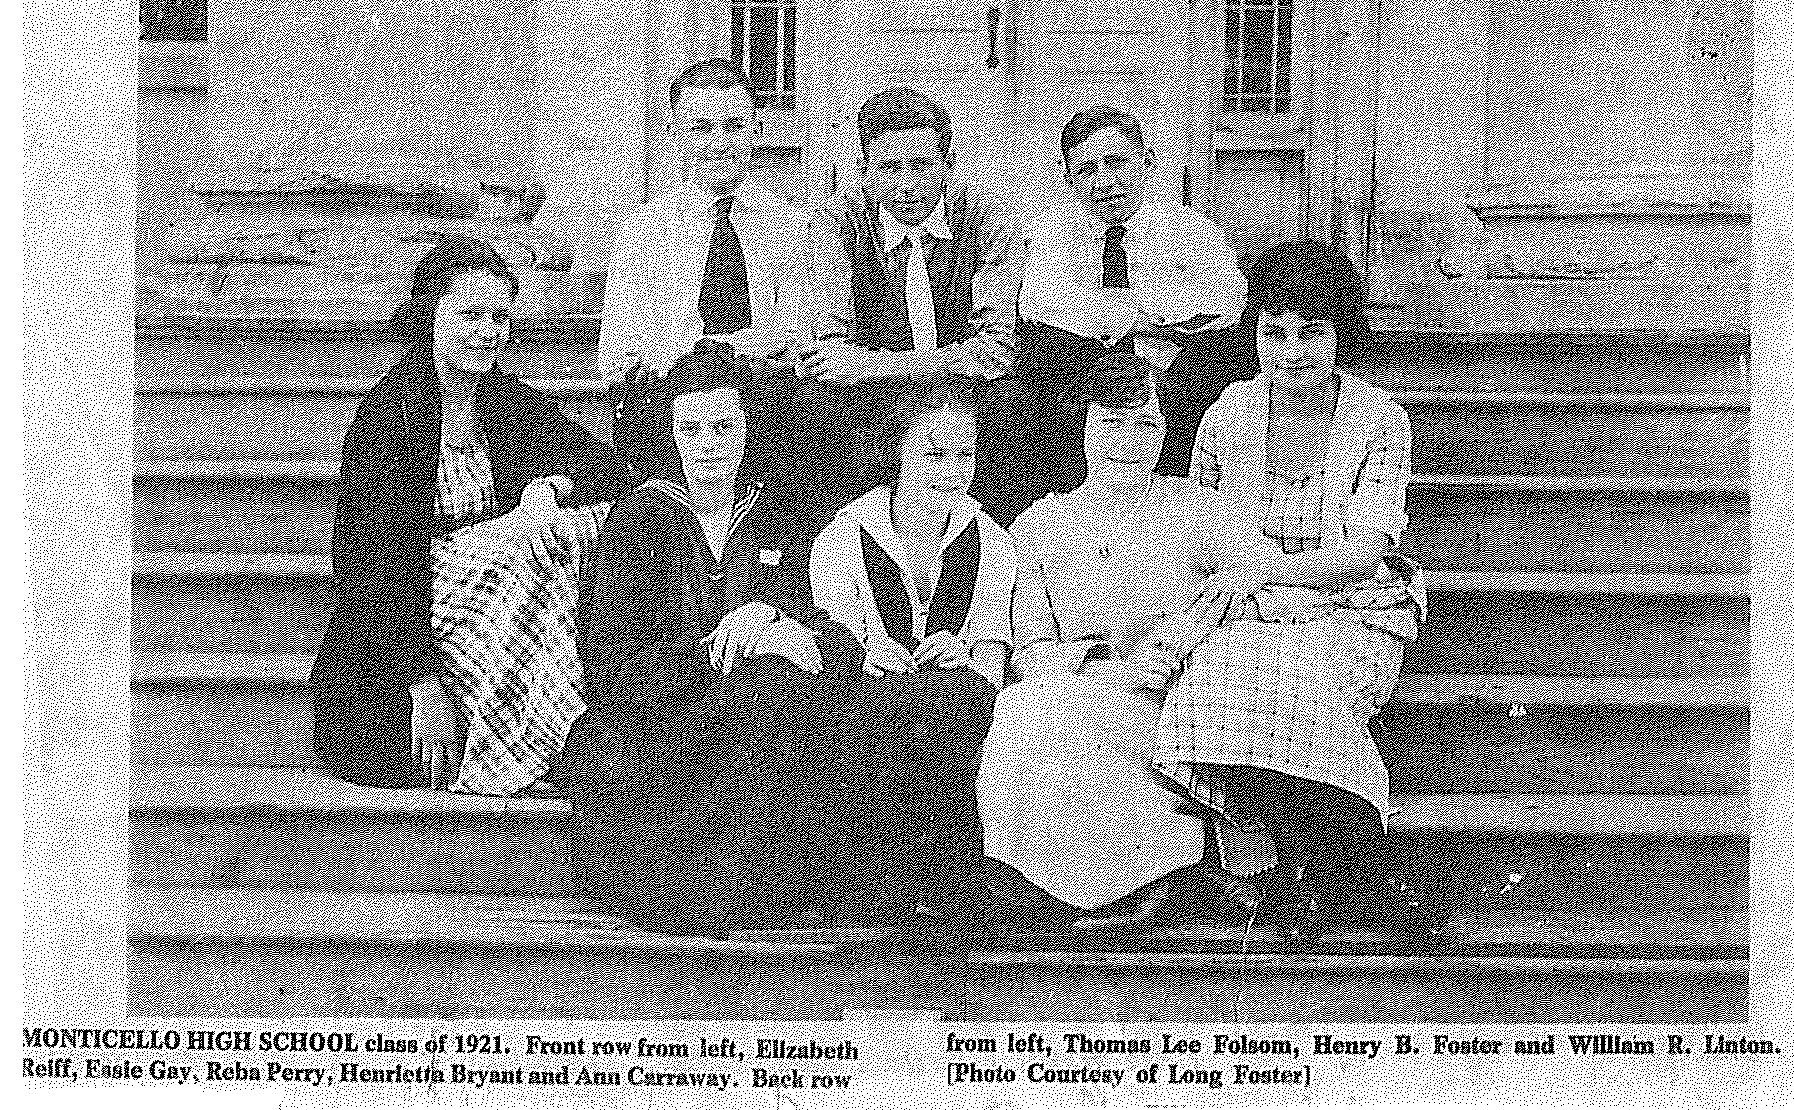 Monticello High School Class of 1921 - Monticello, Florida